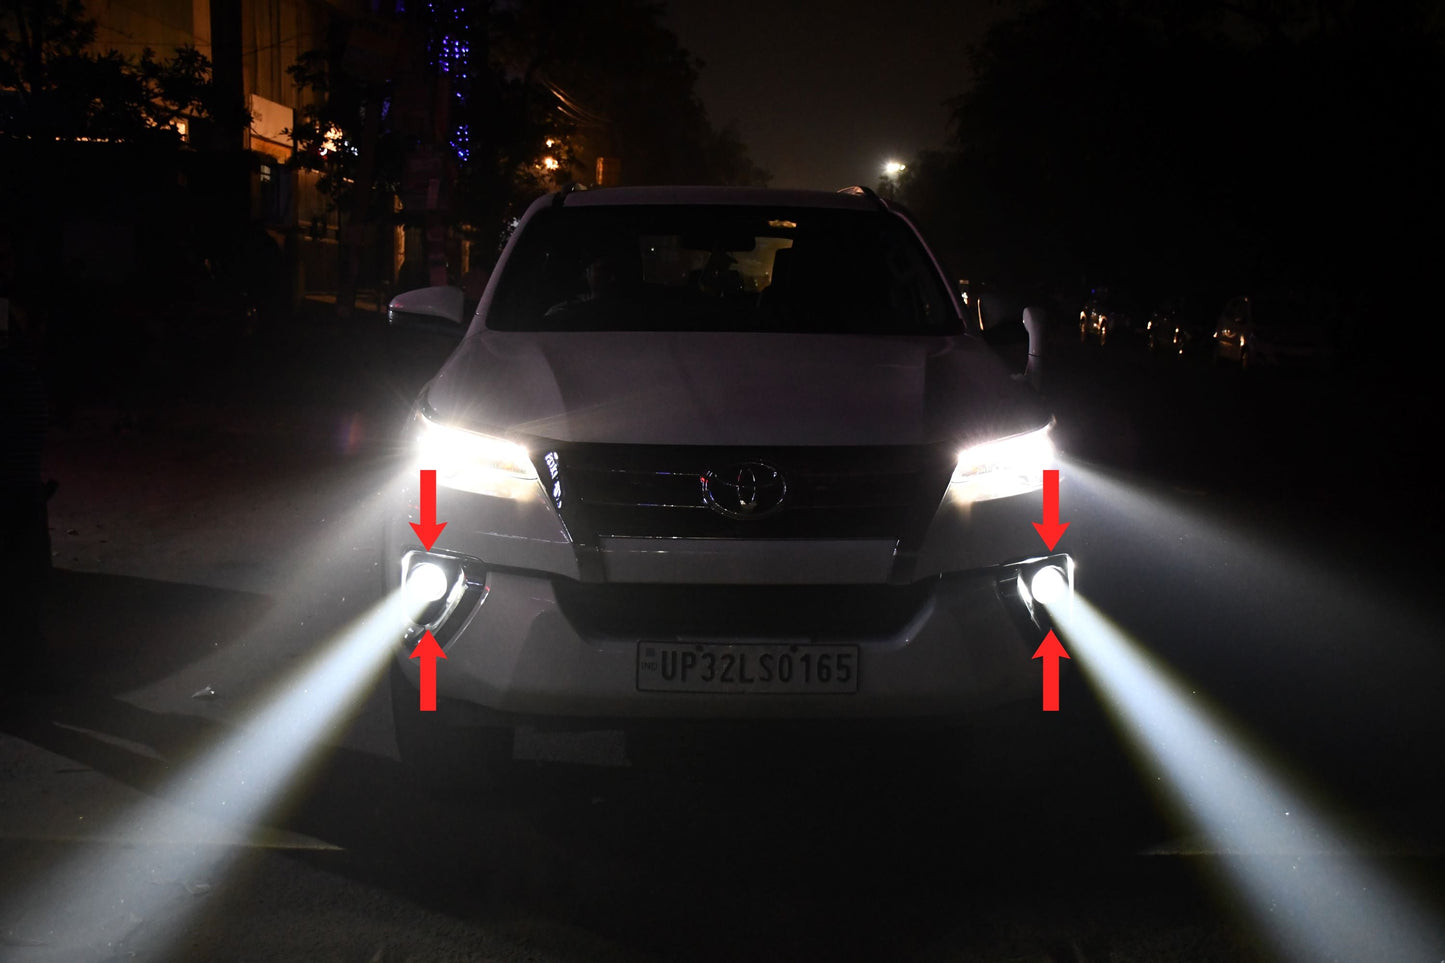 https://www.carplus.in/cdn/shop/files/HAMAAN-Laser-LED-Fog-LampSuitable-for-Suzuki-Ford-Honda-FOG-LIGHTS-KMH-2_1445x.jpg?v=1683243857